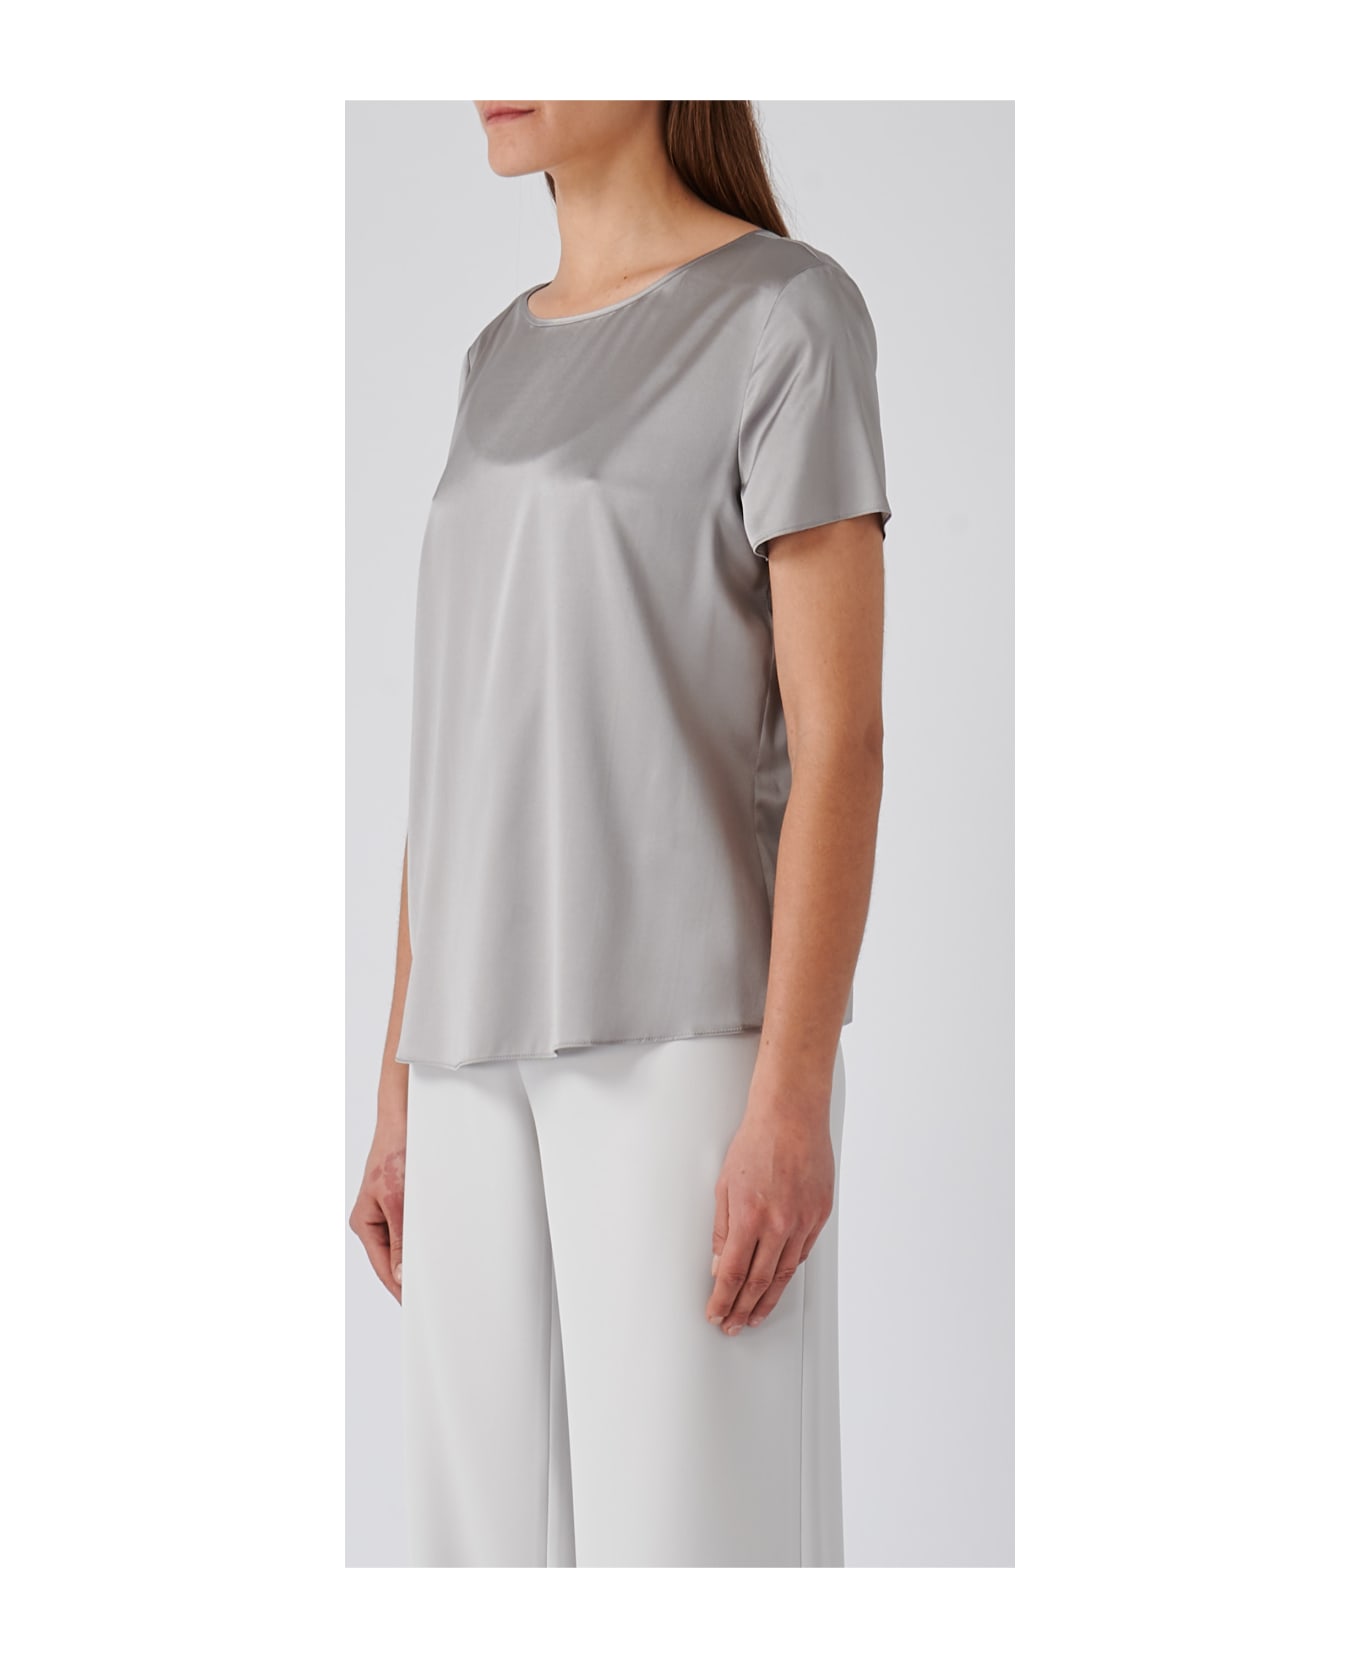 Emporio Armani Silk Top-wear - PERLA Tシャツ